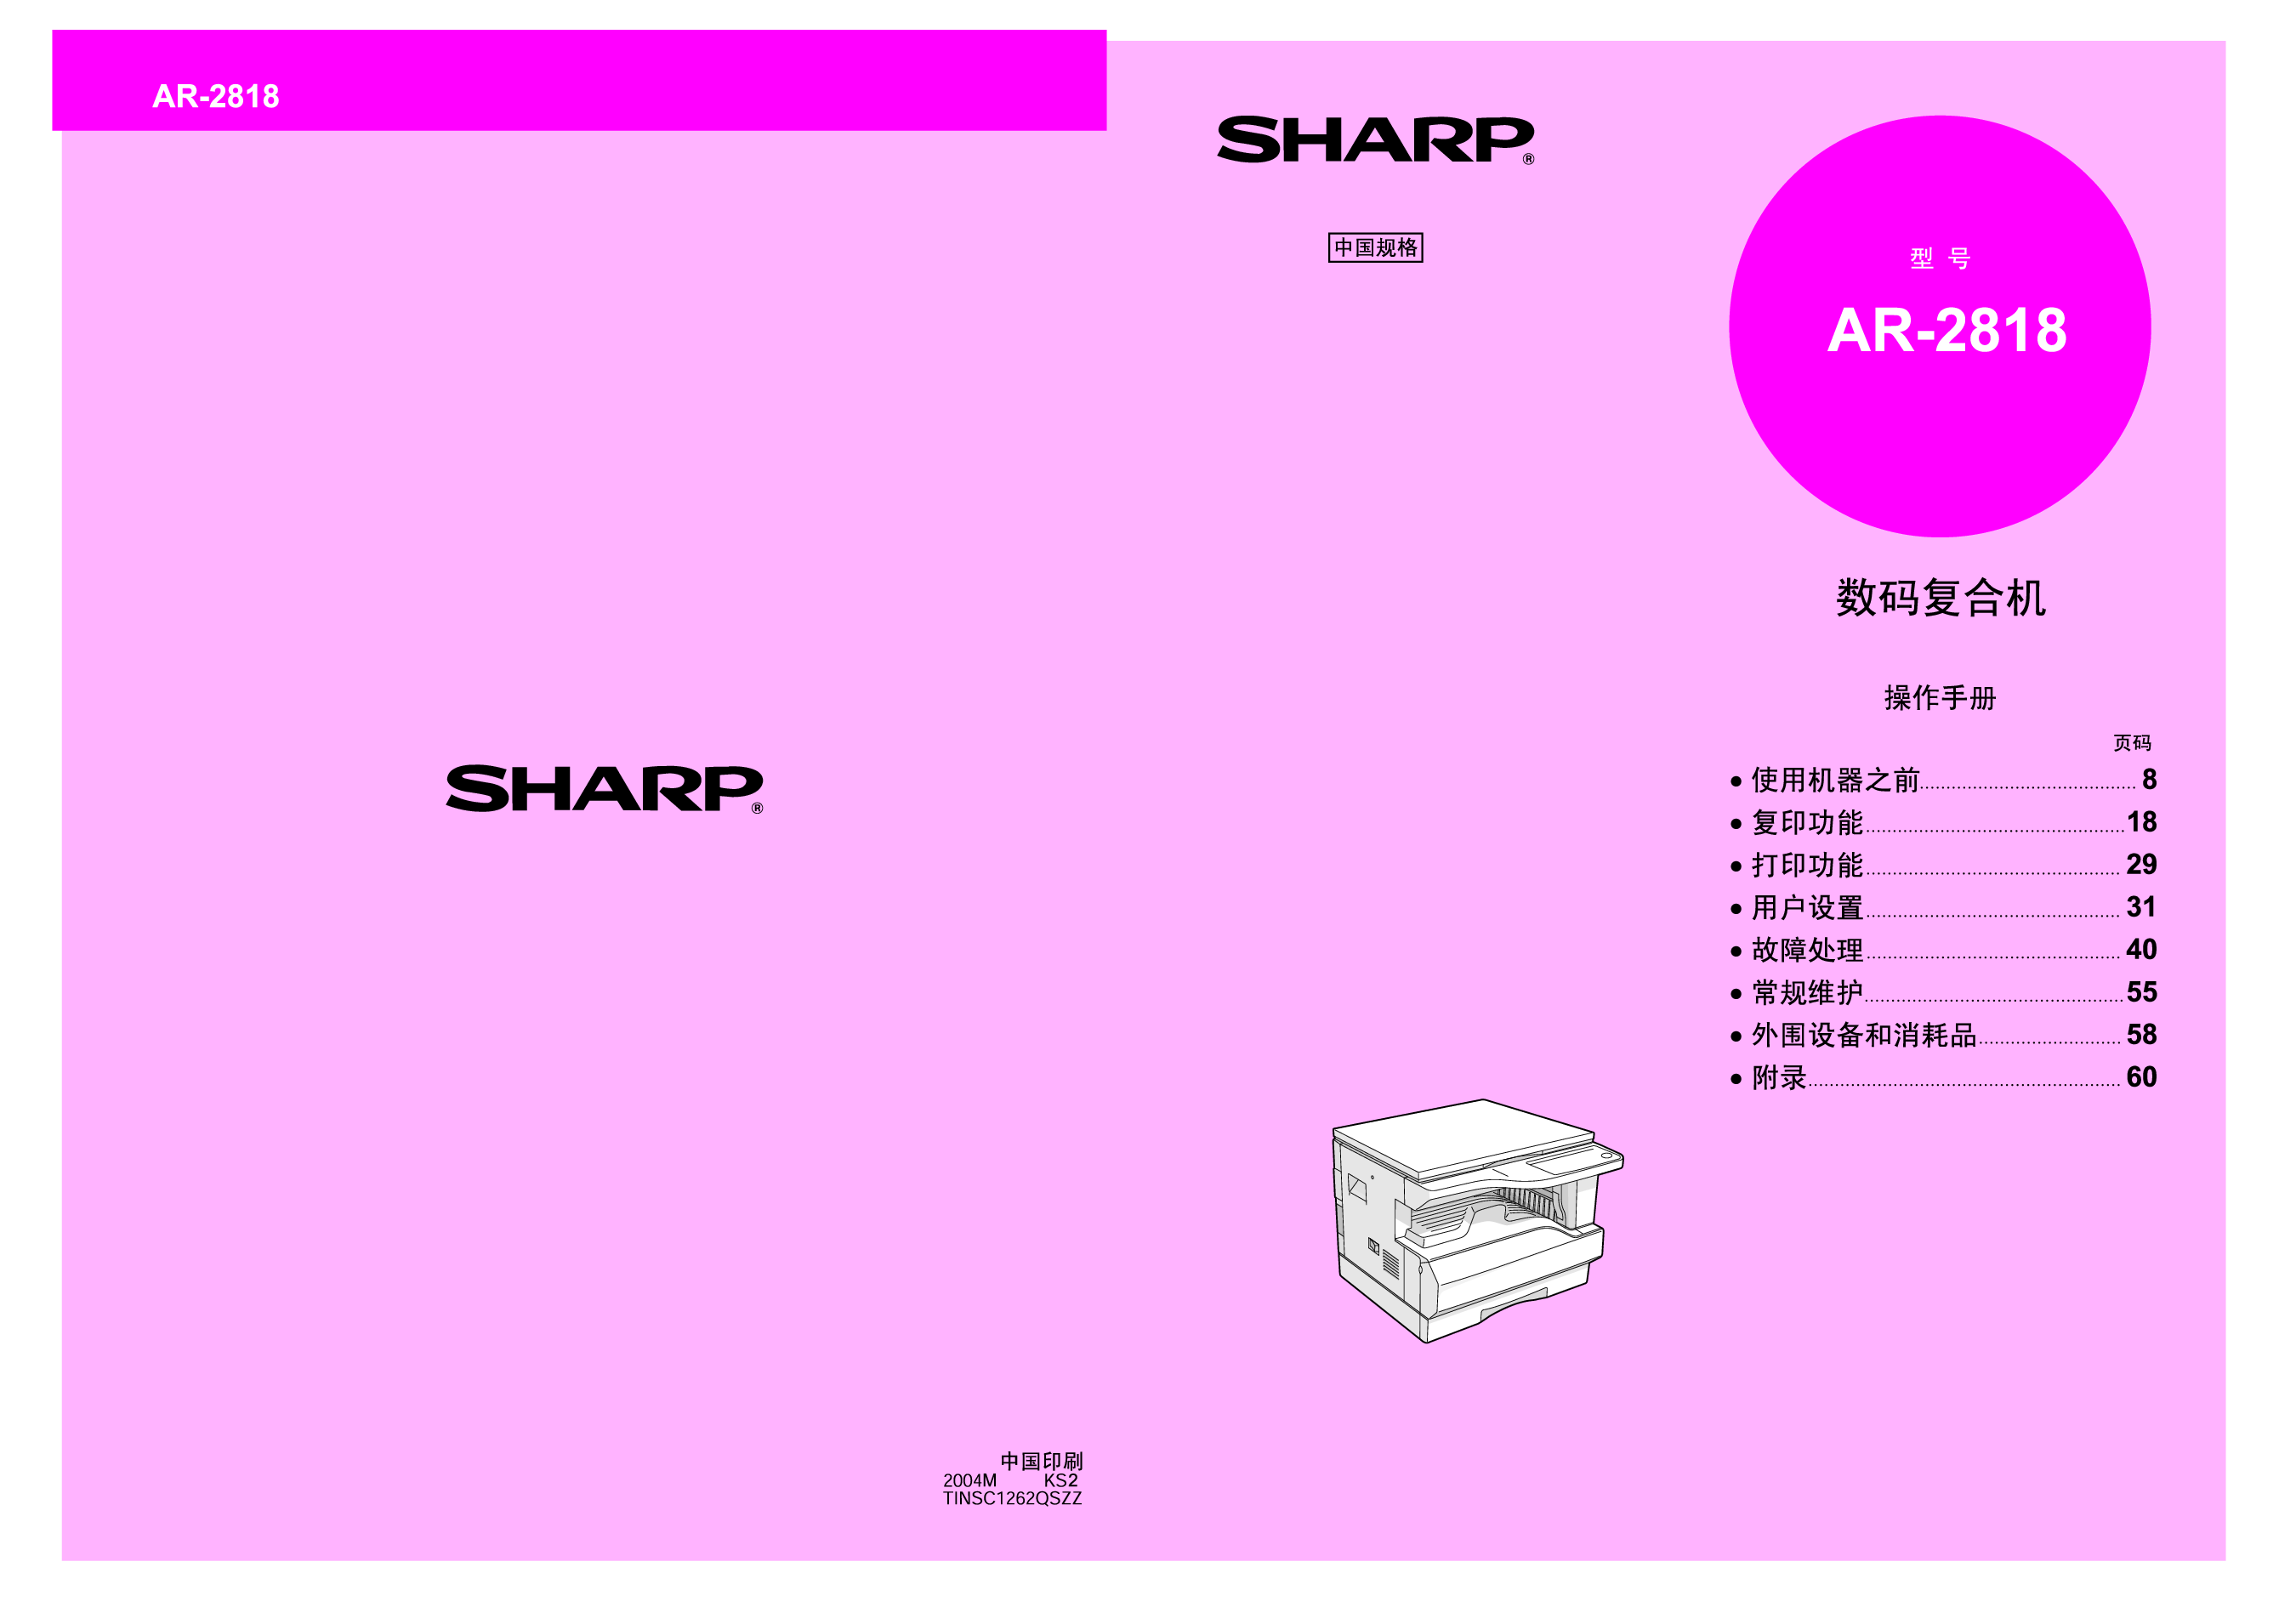 夏普 Sharp AR-2818 操作手册 封面